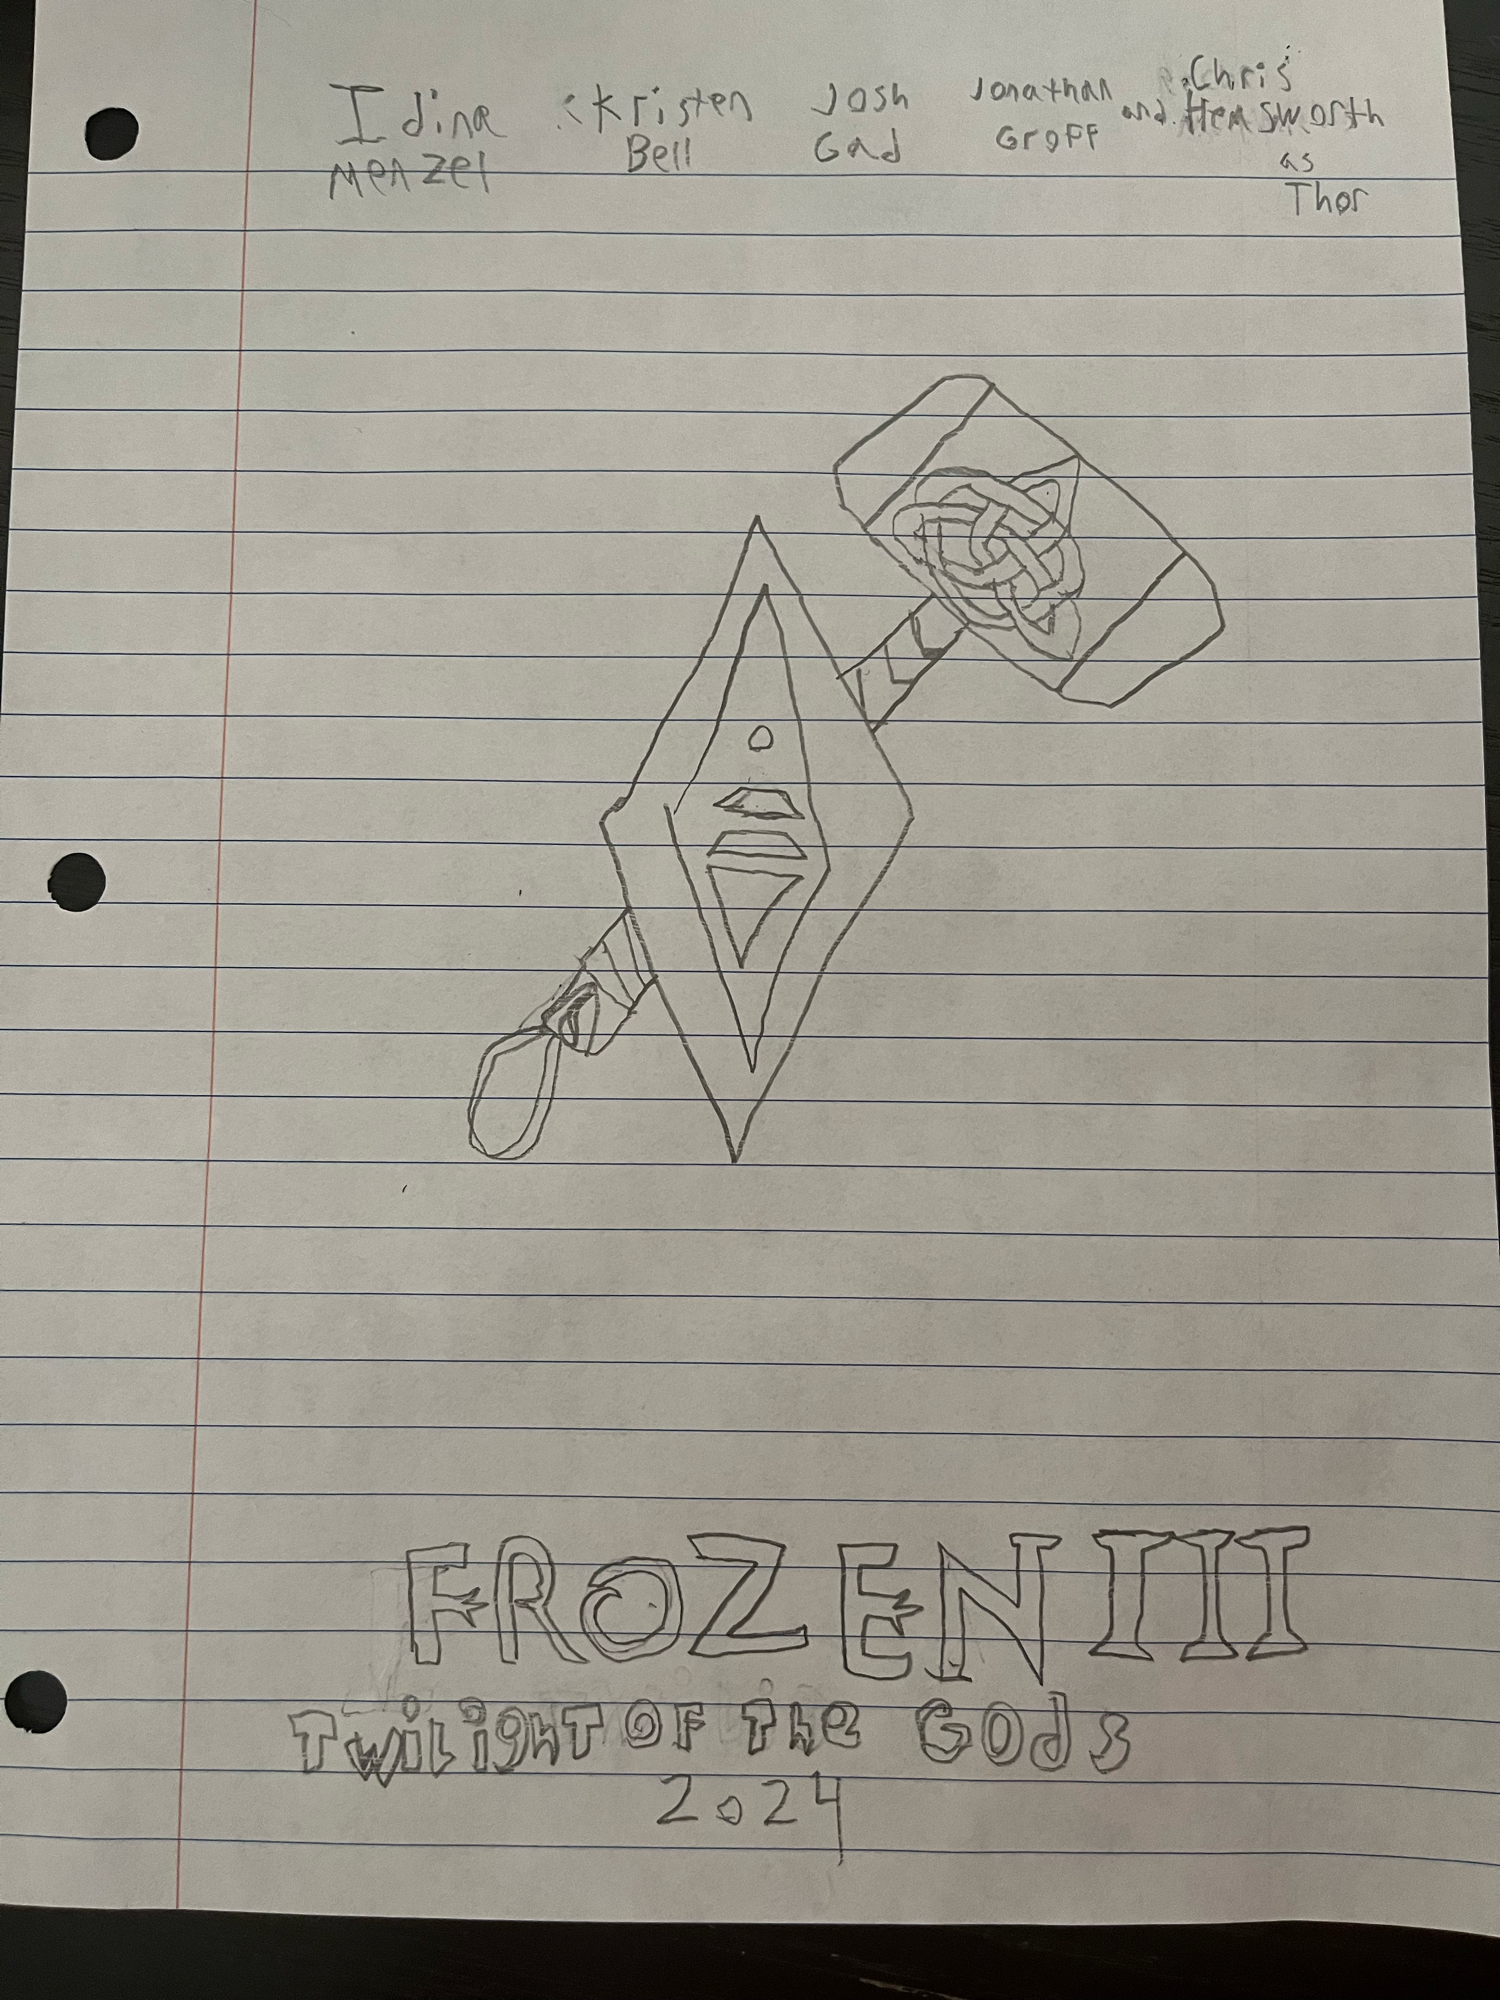 Frozen 3 fan poster